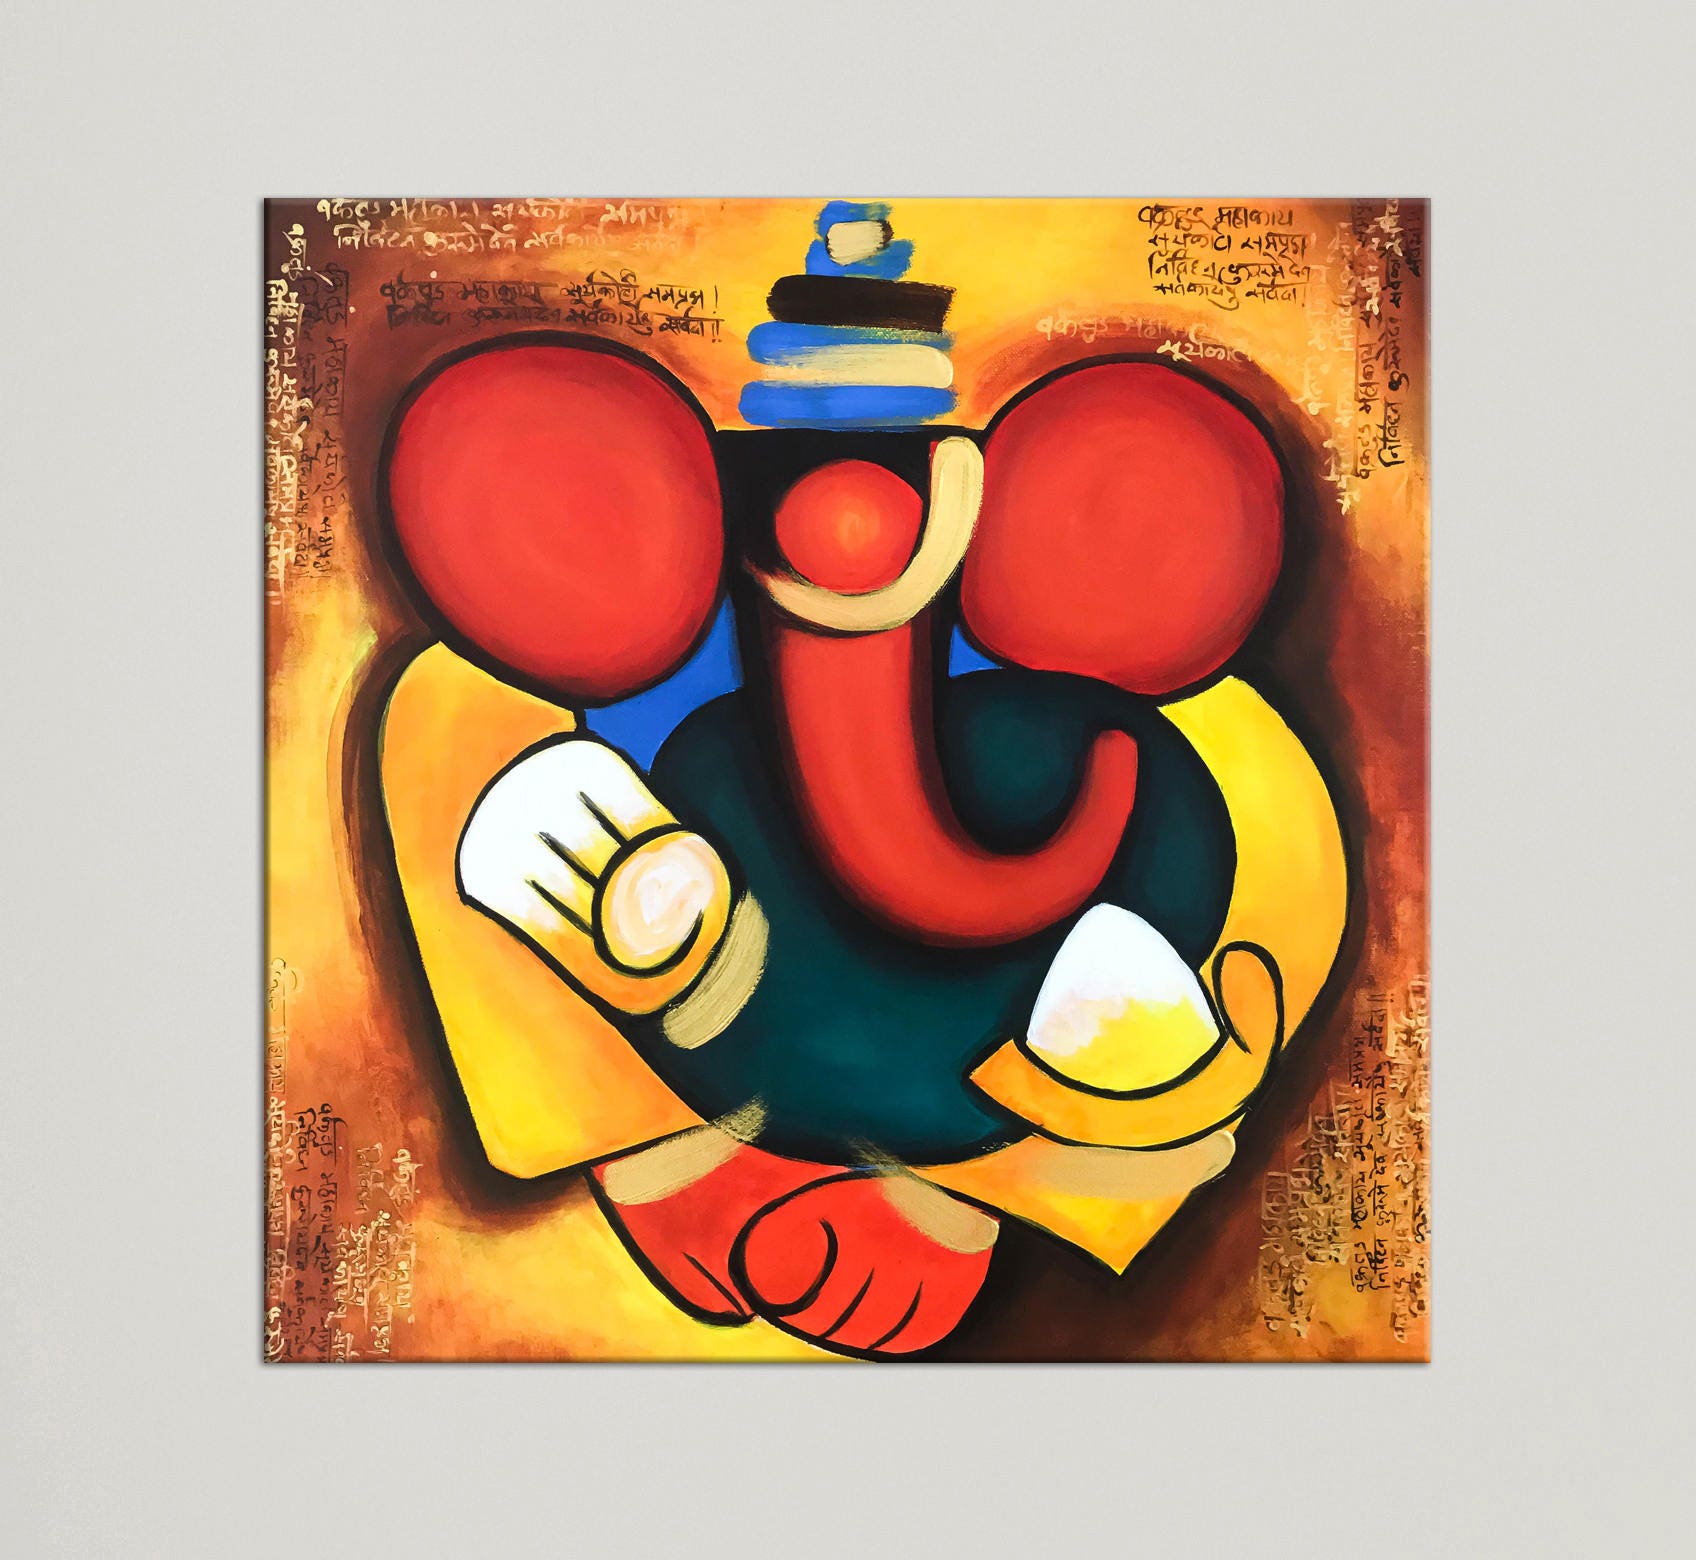 Abstract Ganesh Painting by Rupa Prakash | Saatchi Art